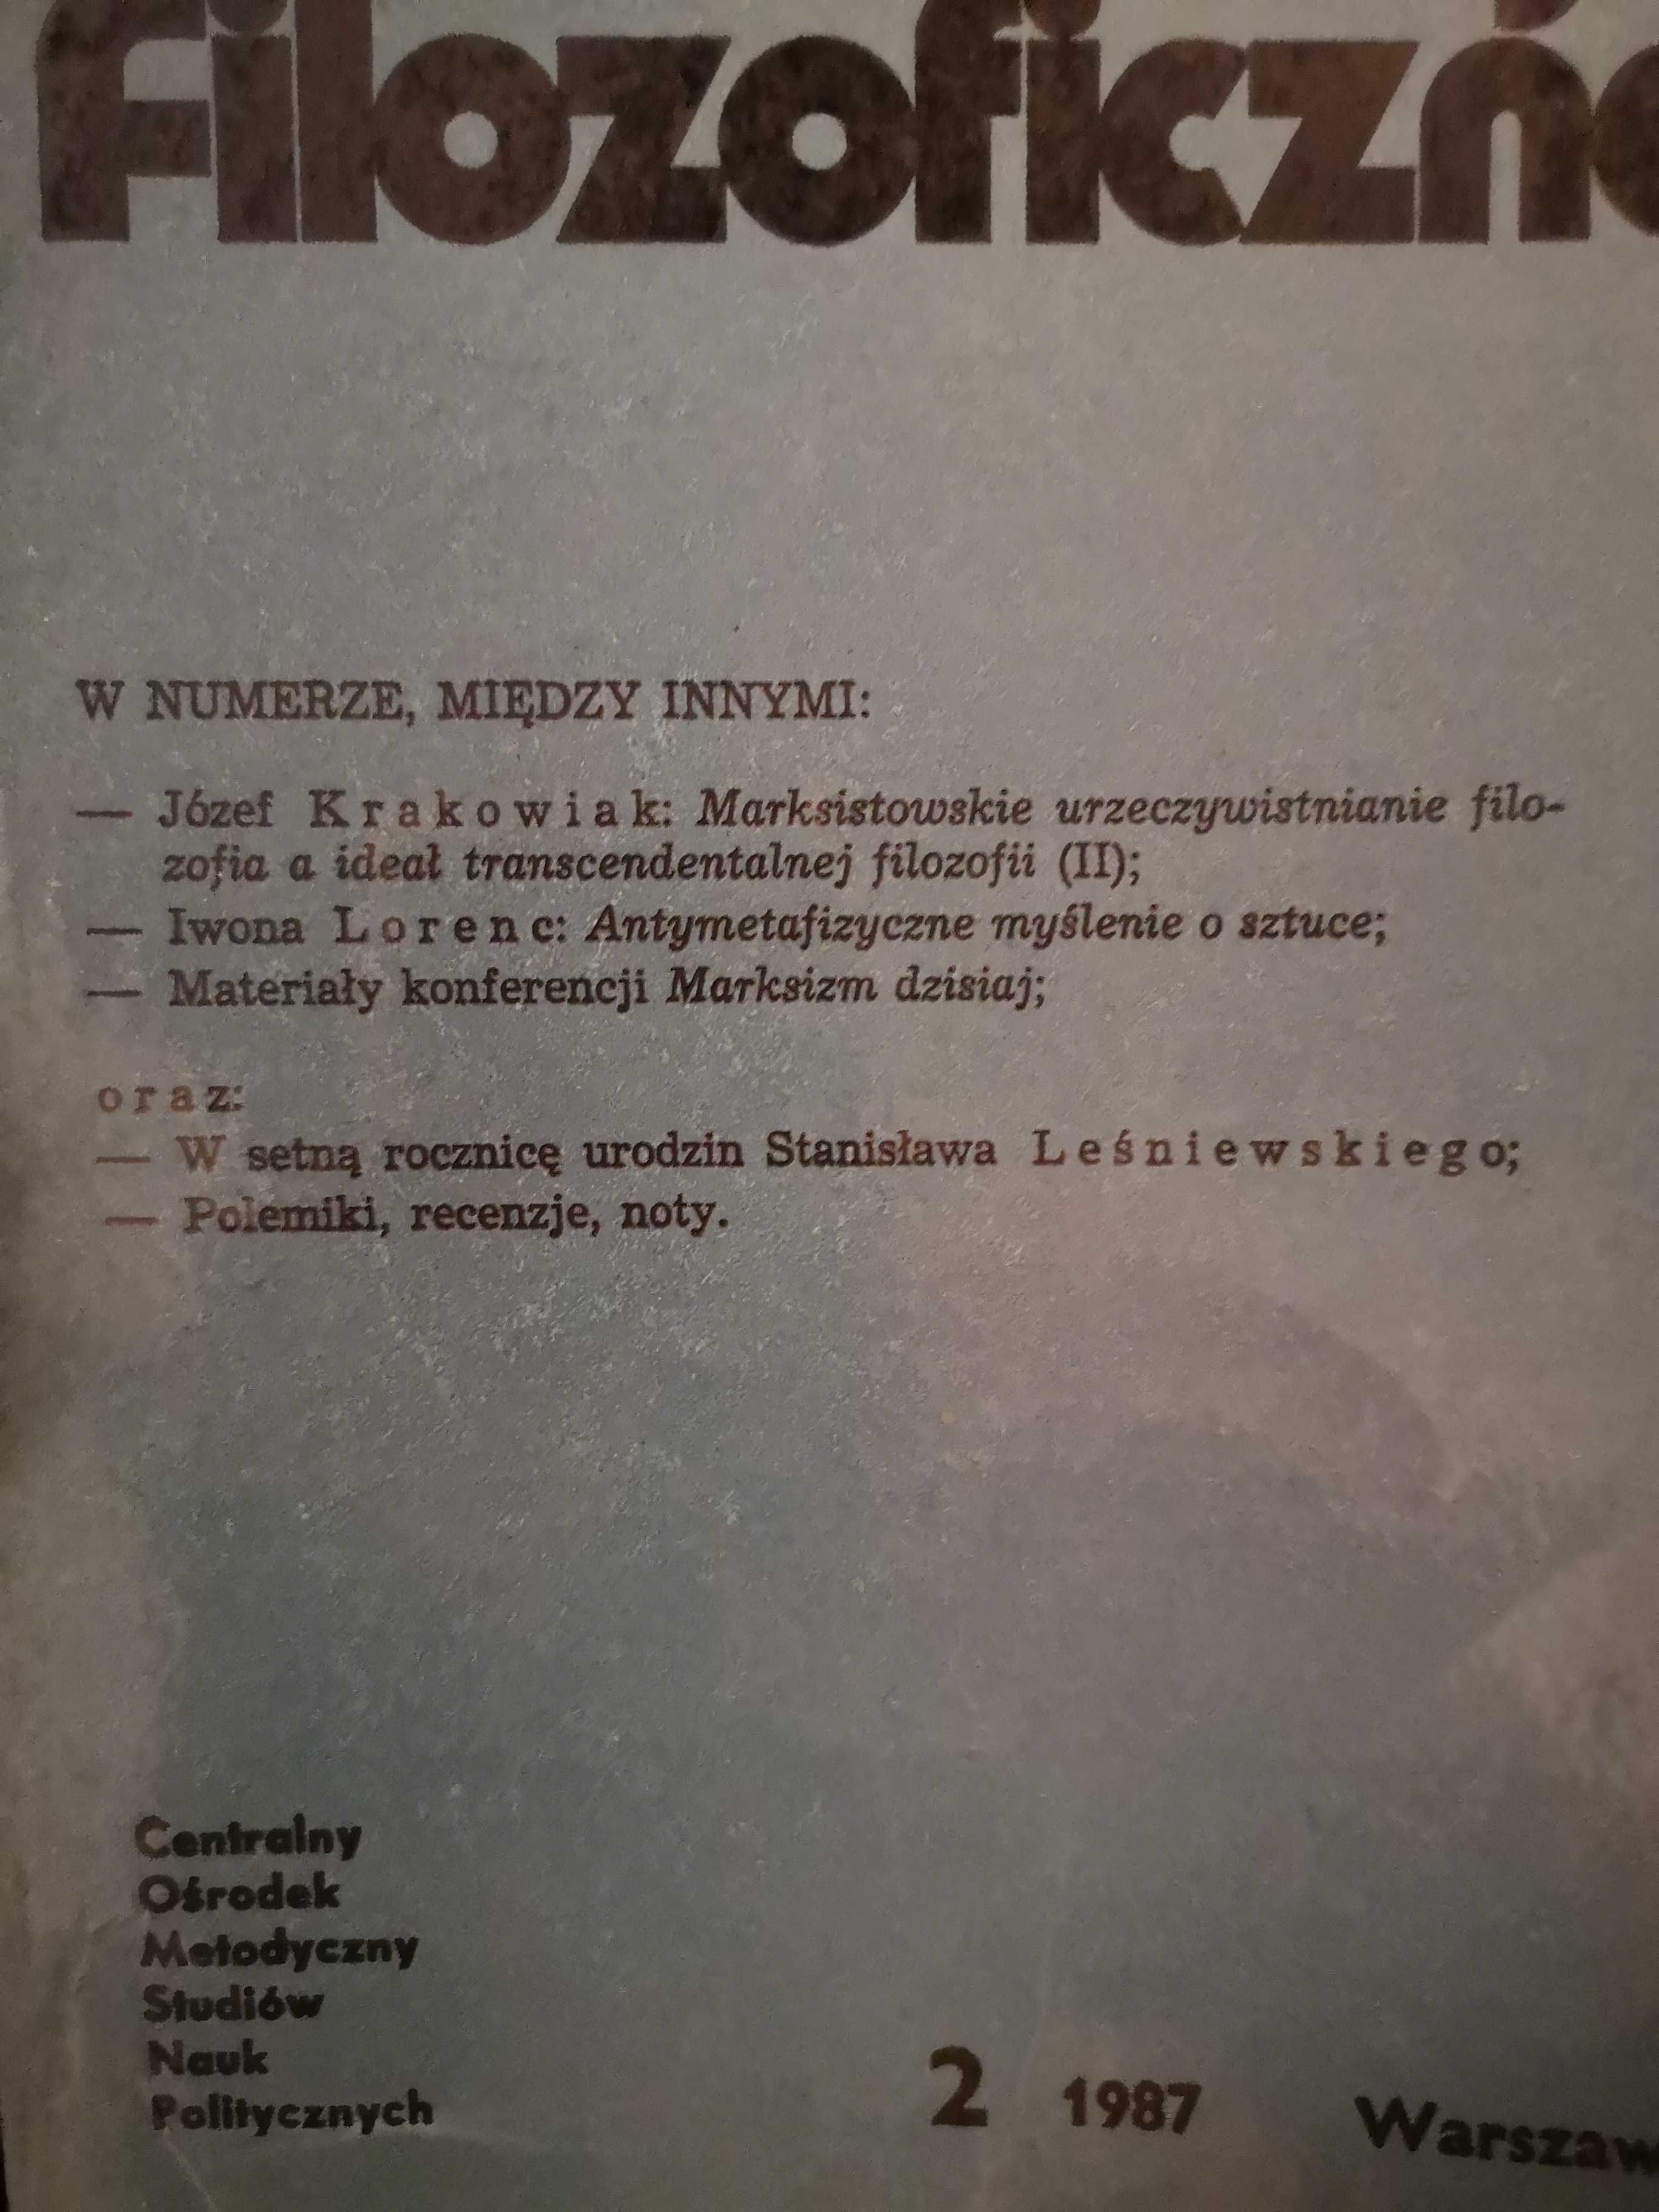 EDUKACJA FILOZOFICZNA cz. 2 (1987) i 4 (1988) - praca zbiorowa COMSNP